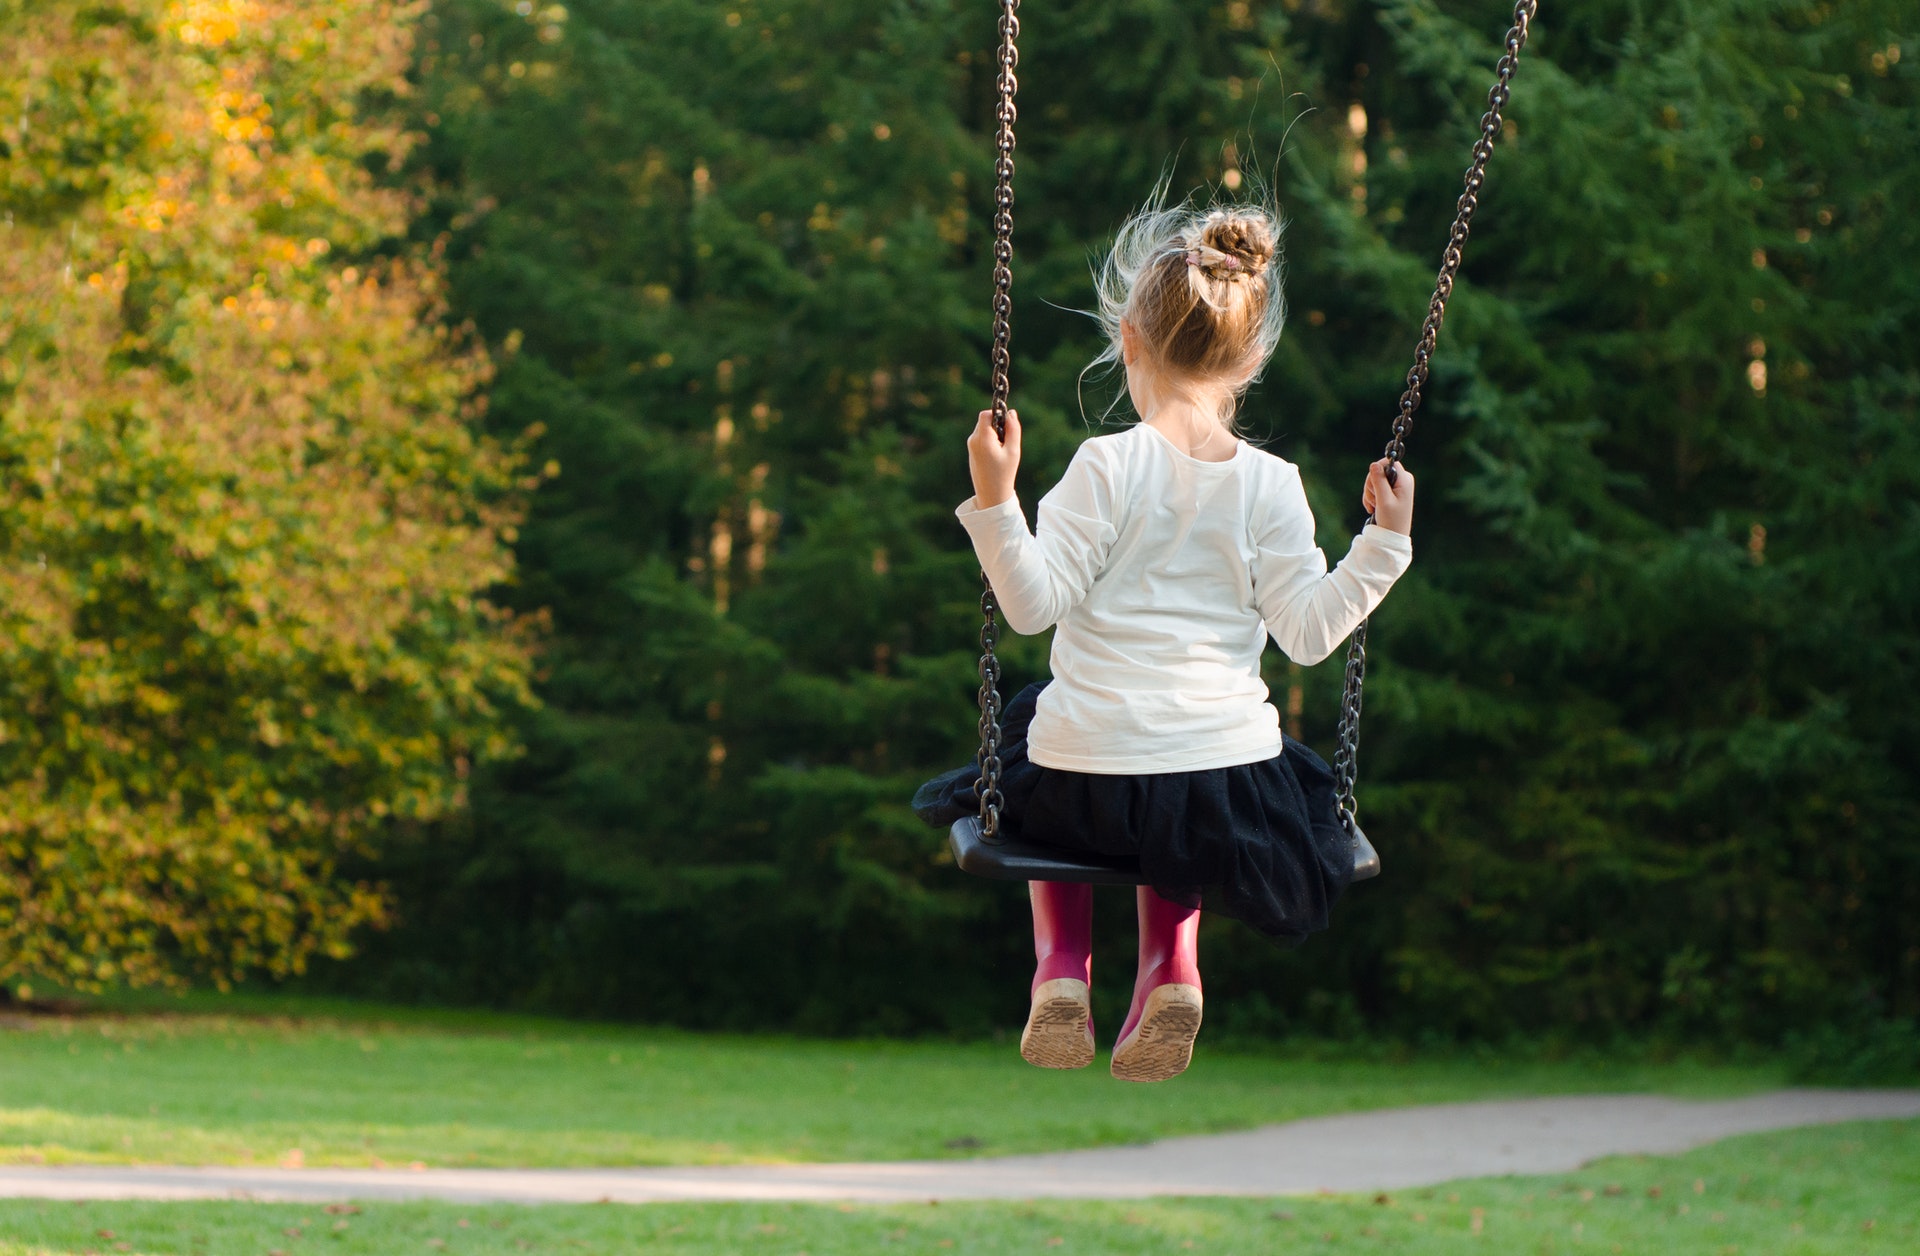 Little girl by herself on swing